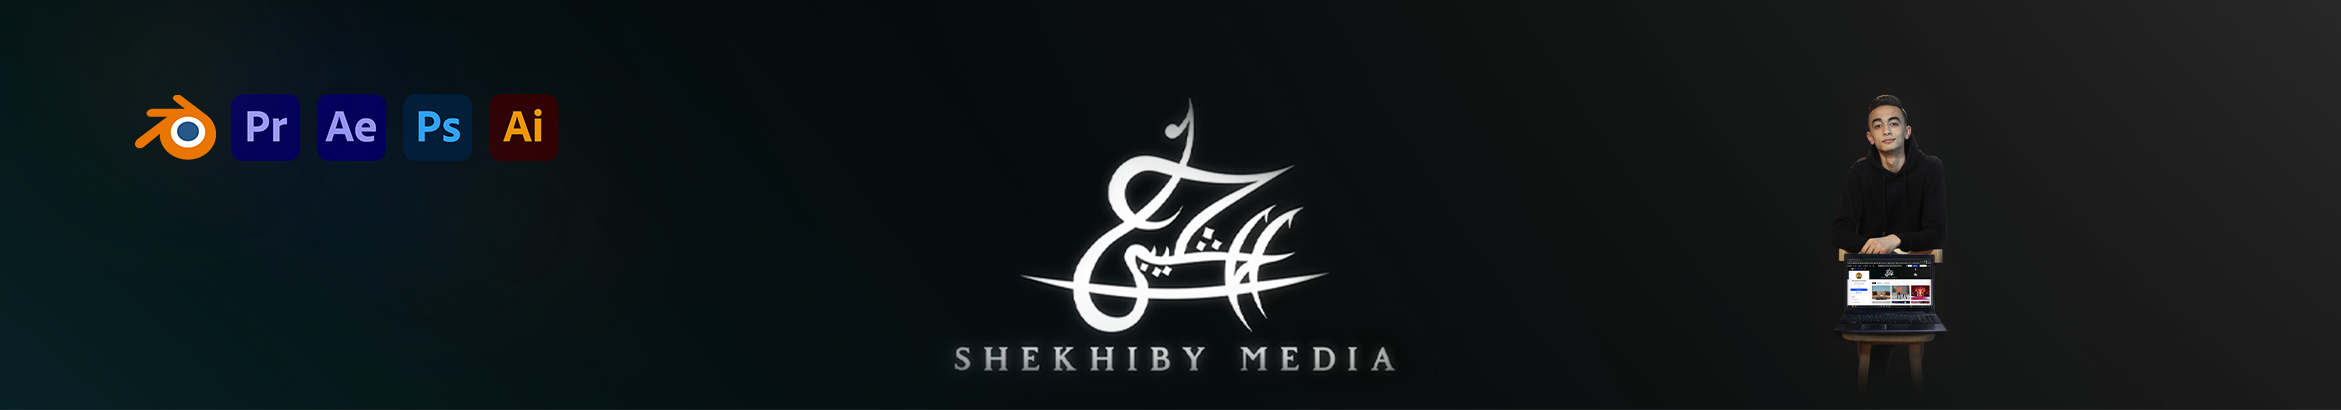 Profil-Banner von Abd alrhman Ramadan